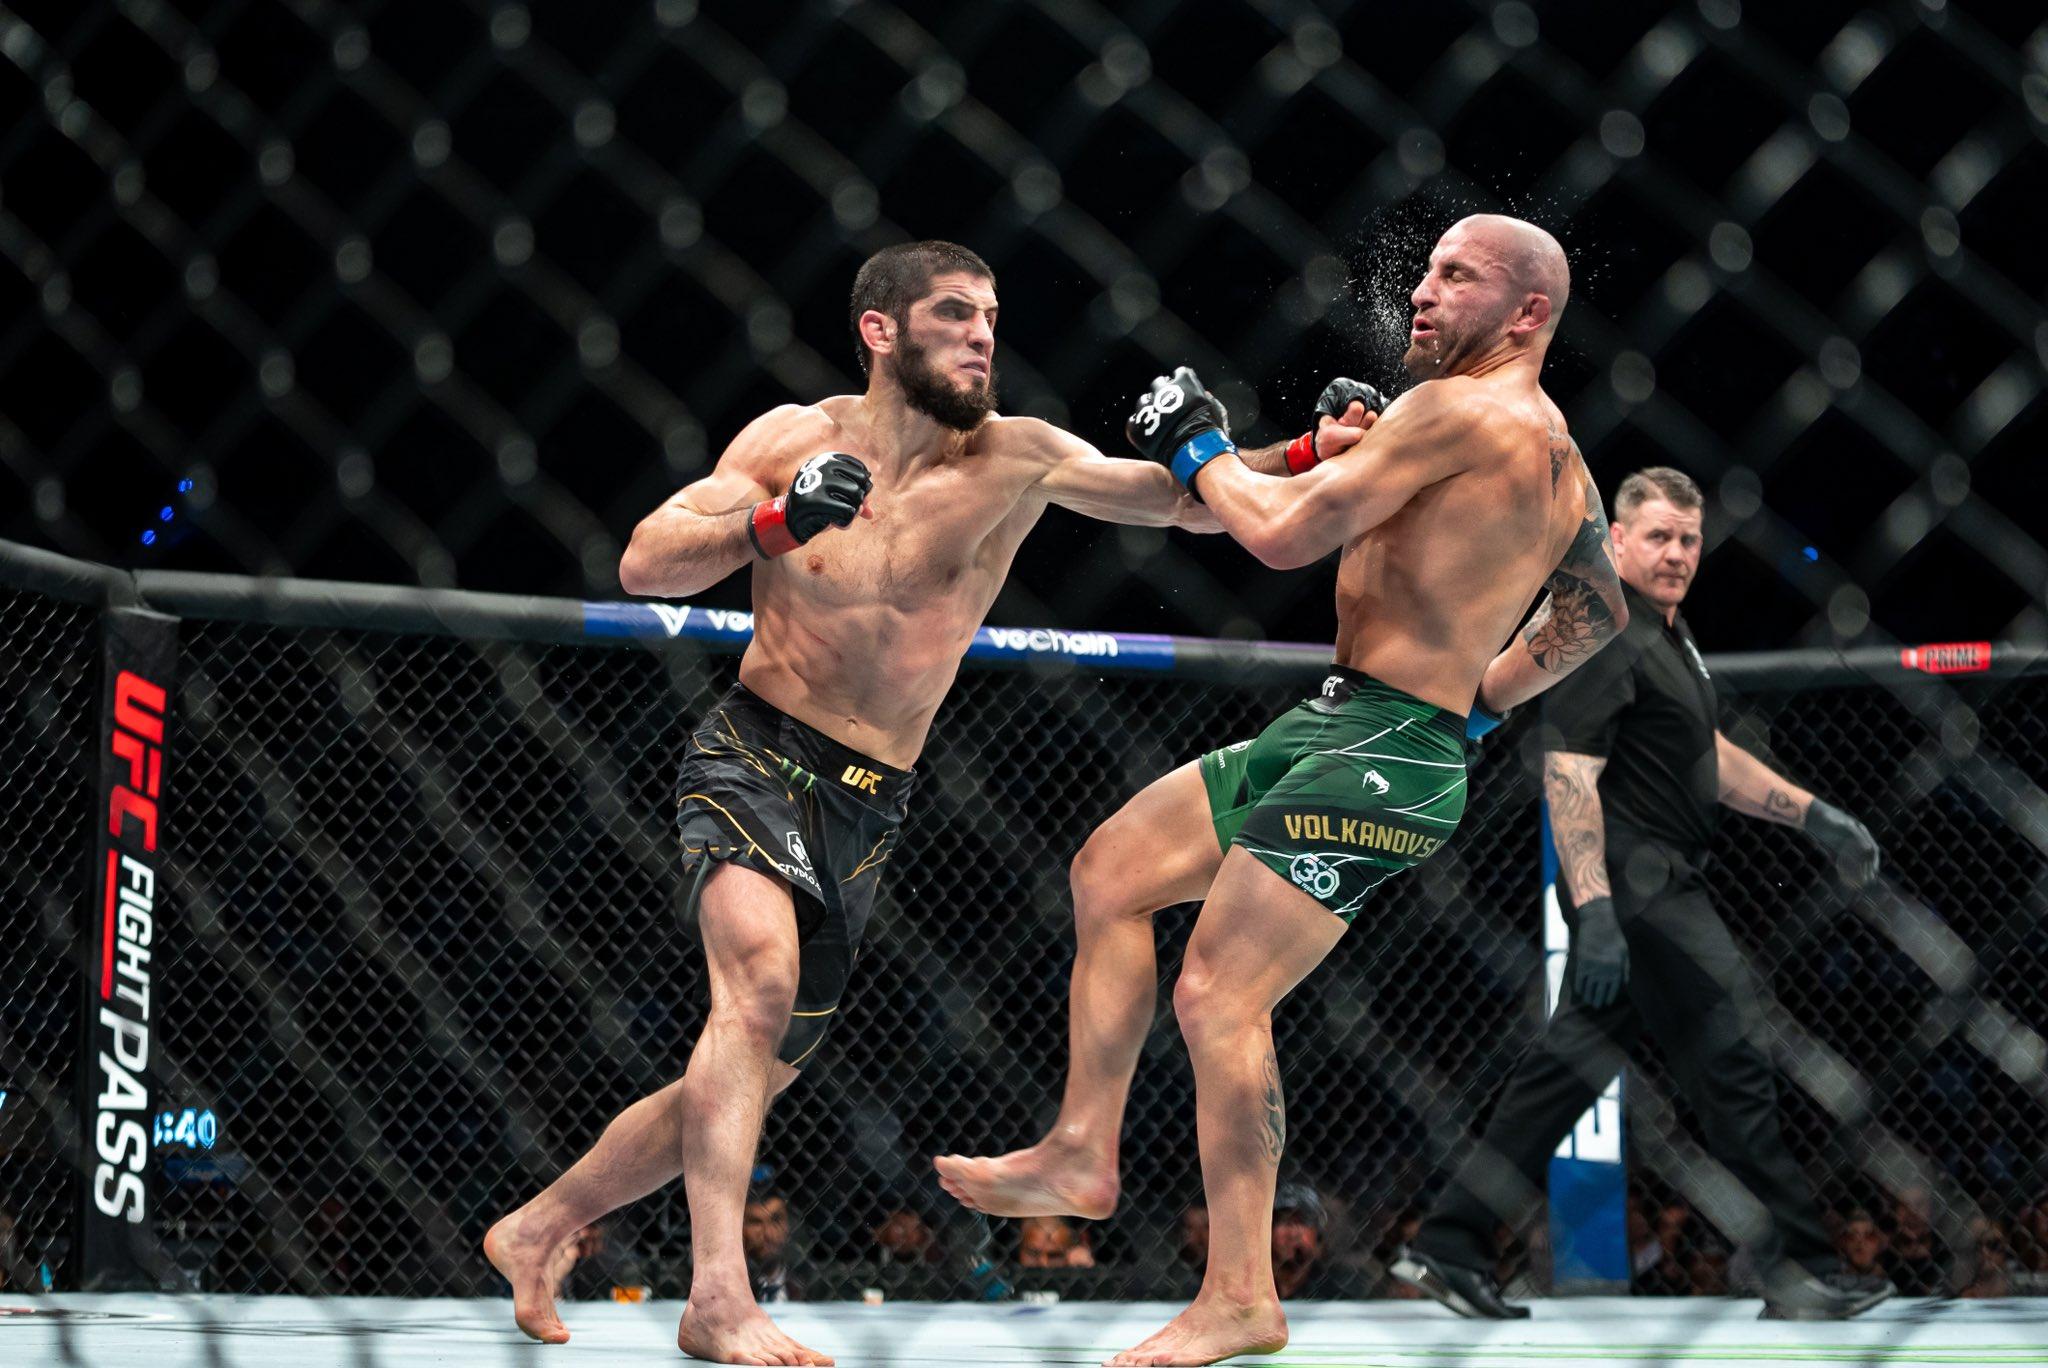 Islam Makhachev golpeando en el rostro a su rival ded UFC Alexander Volkanovski